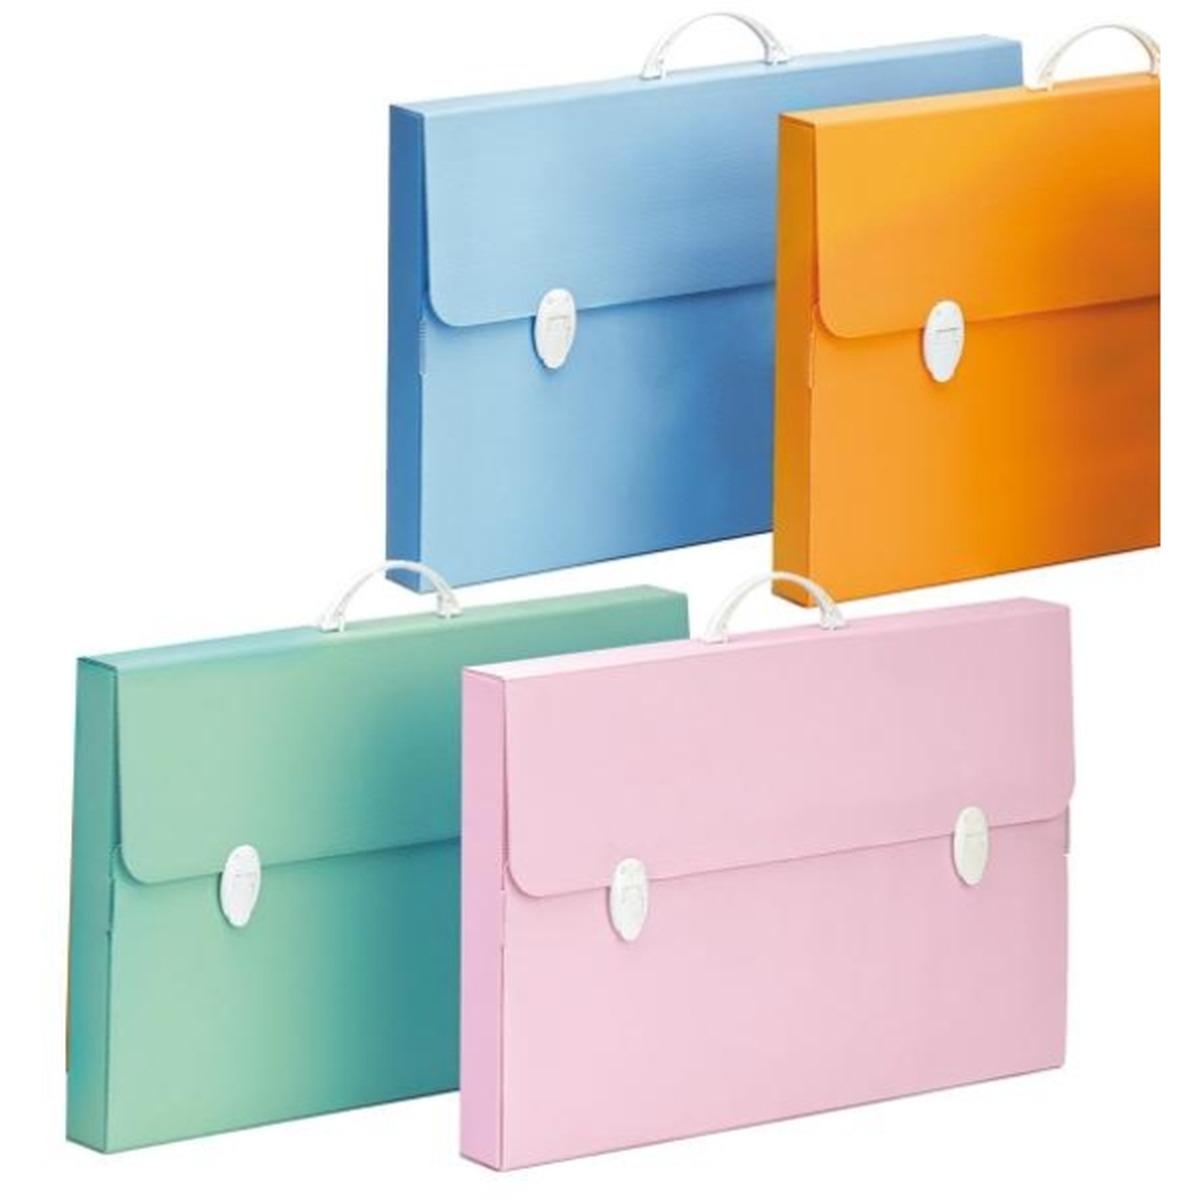 B-case - valigetta stesa every line pastel 0254/p - formato 27 x 37,5 x 8 cm - maniglia e chiusura bianco  -